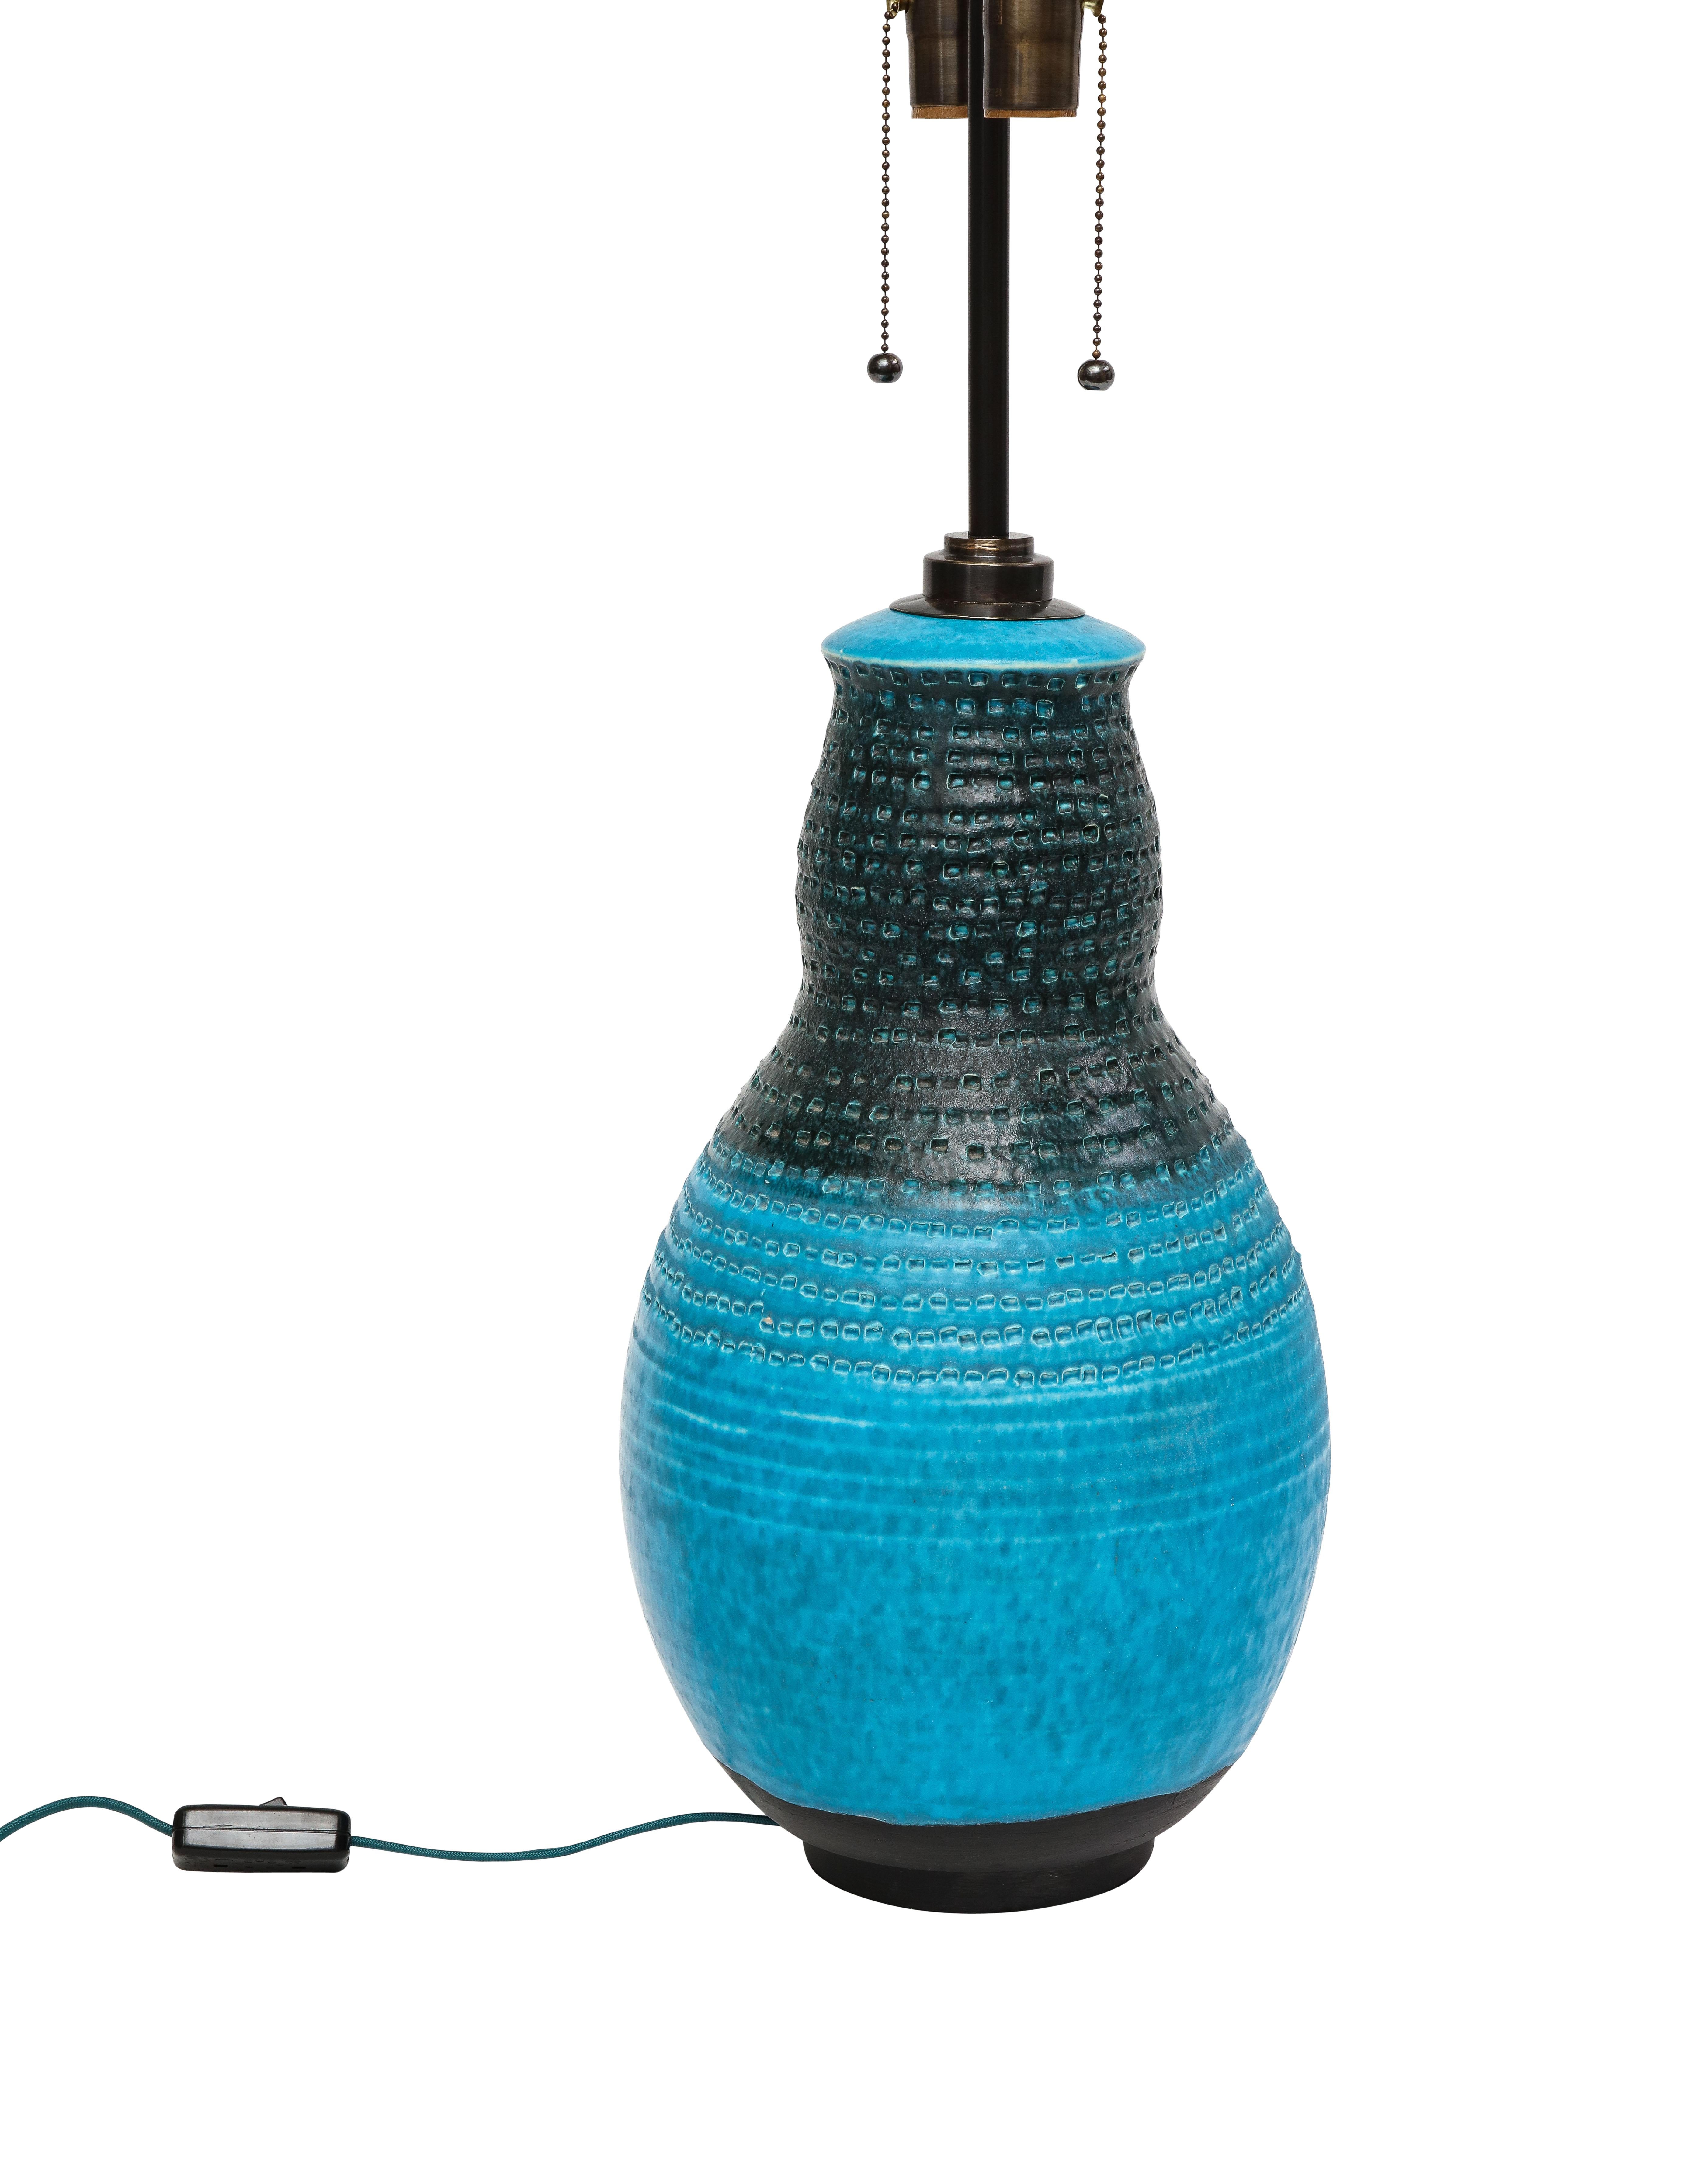 Mid-20th Century Alvino Bagni Table Lamp, Ceramic, Blue, Black, Impressed